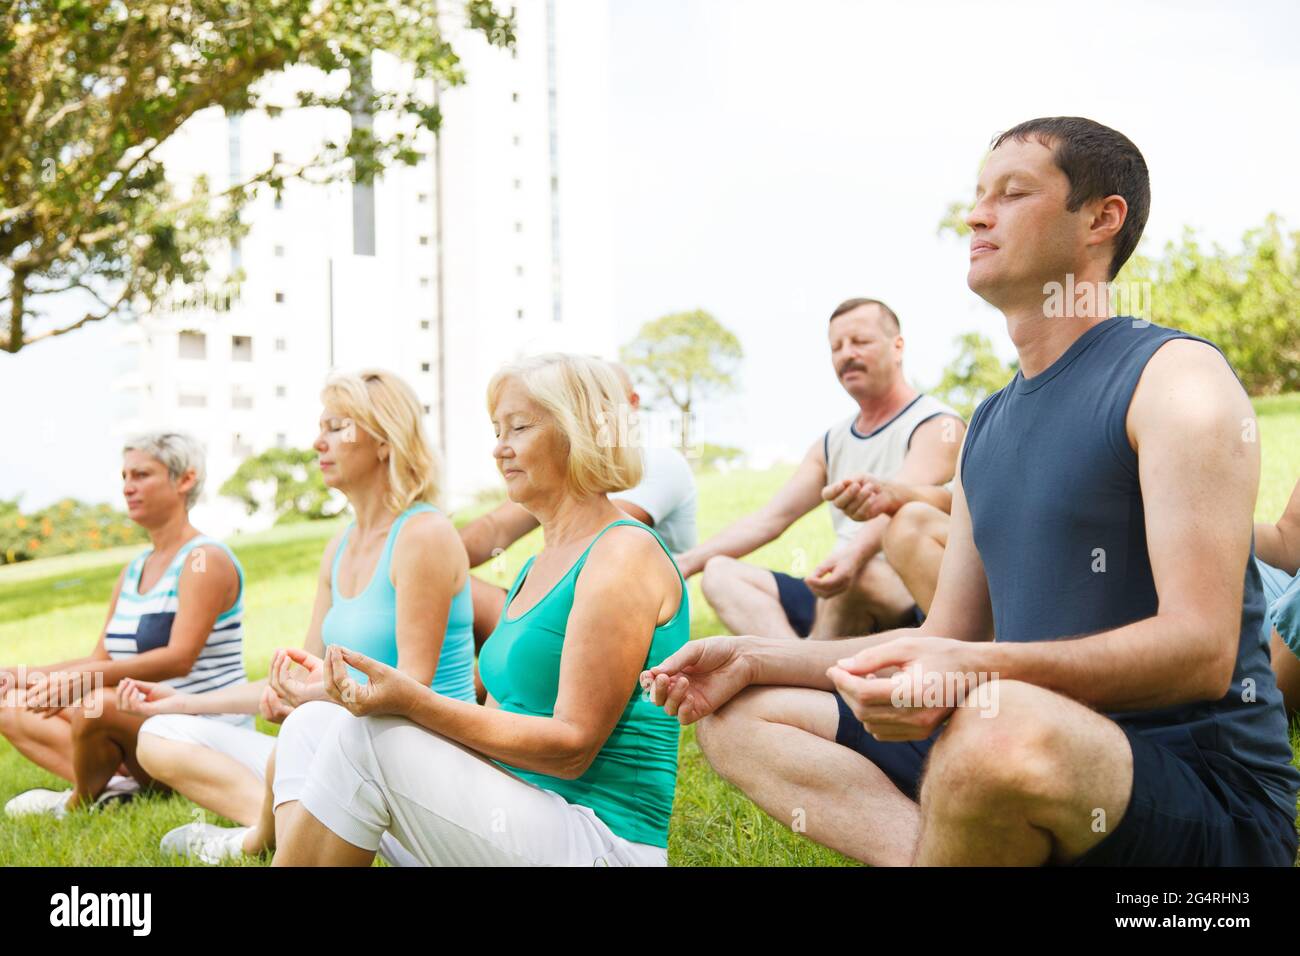 Groupe de personnes pratiquant le yoga à l'extérieur Banque D'Images